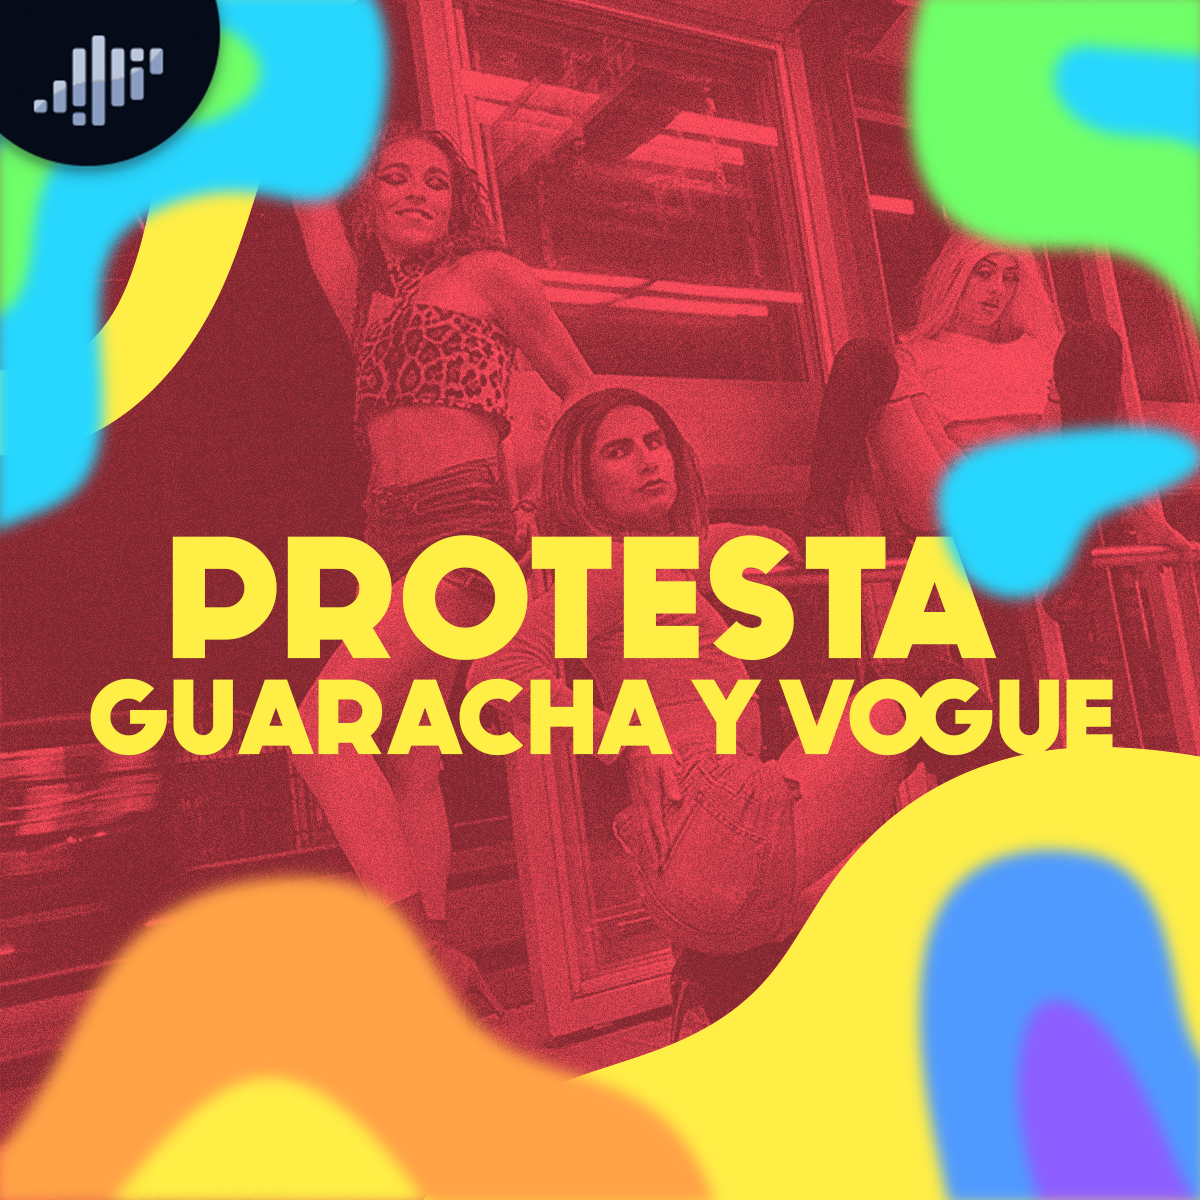 Protesta, Guaracha y Vogue